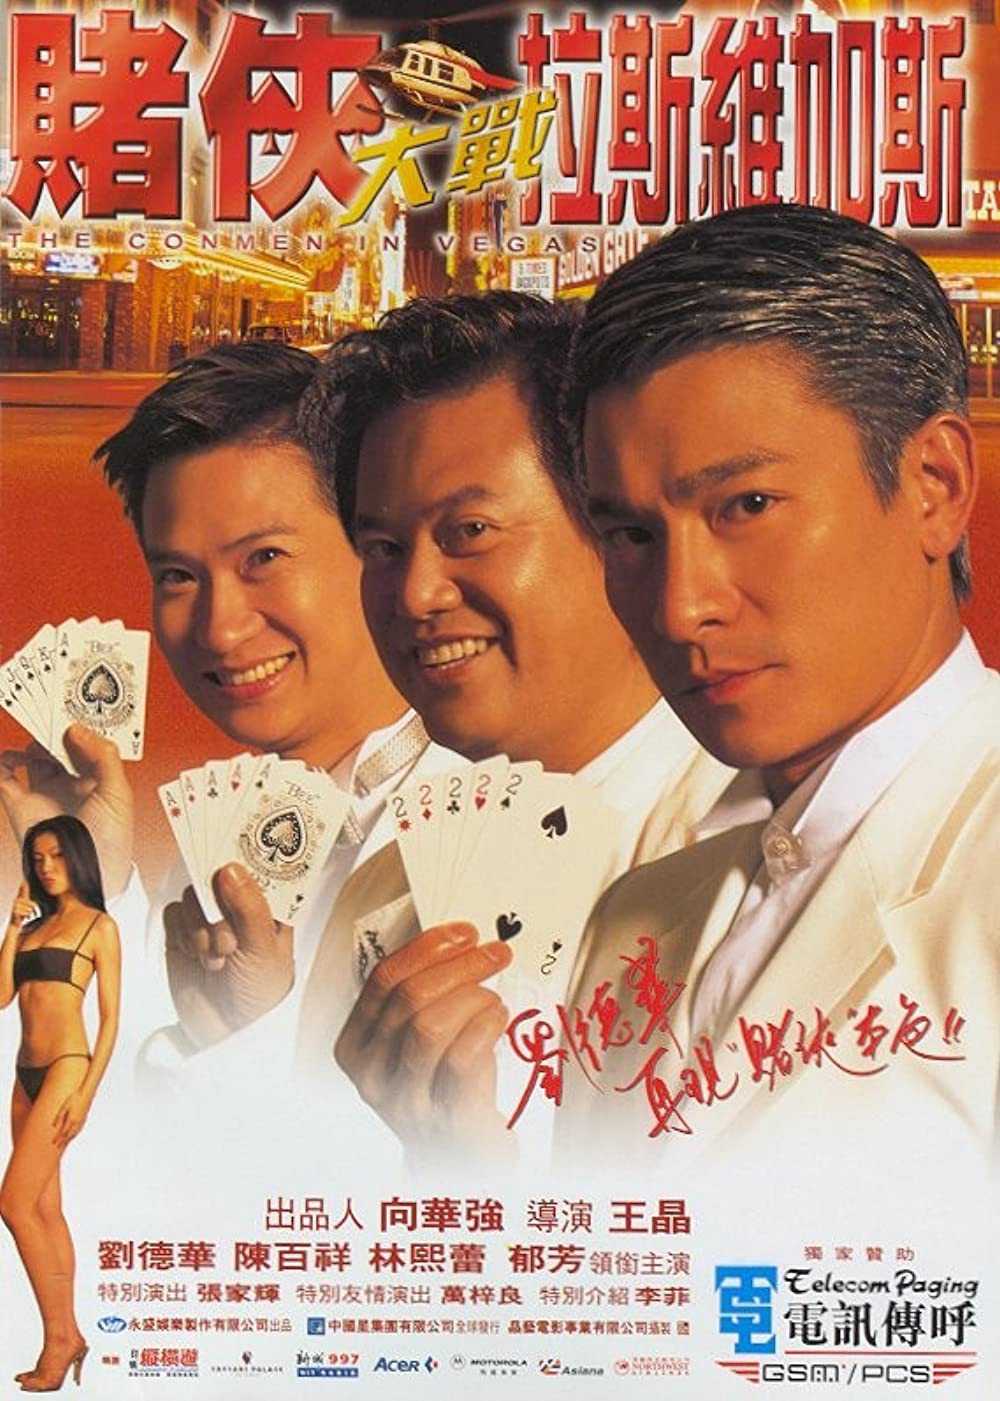 Vua bịp đại chiến Las Vegas (The Conmen in Vegas) [1999]